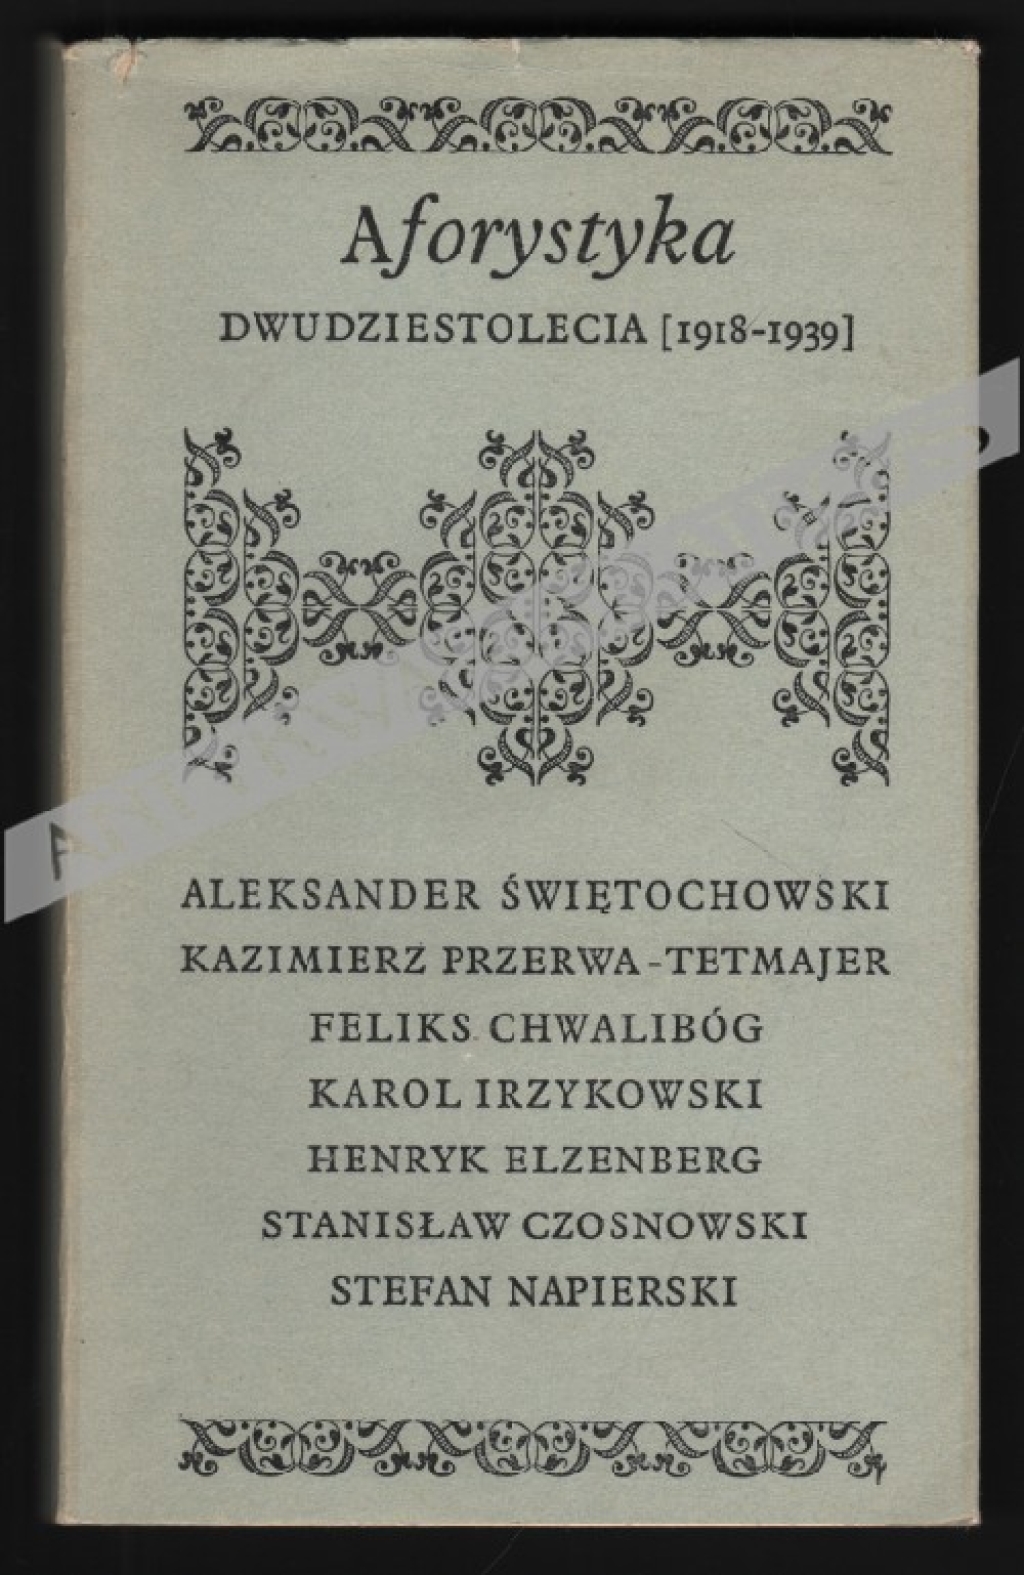 Aforystyka dwudziestolecia (1918-1939)